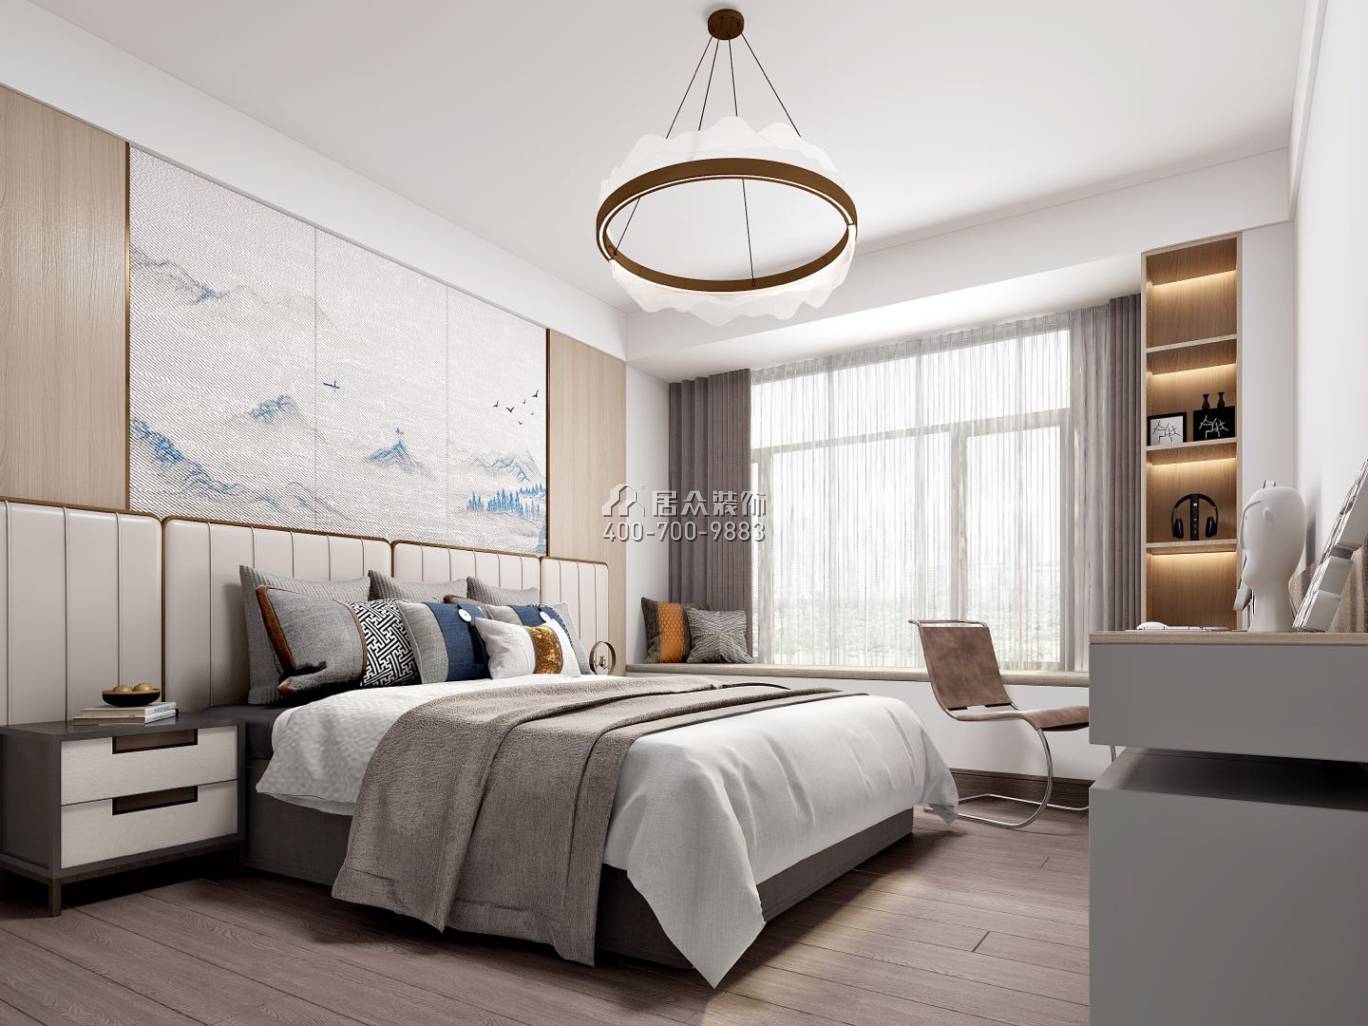 翠湖香山别苑238平方米中式风格复式户型卧室装修效果图